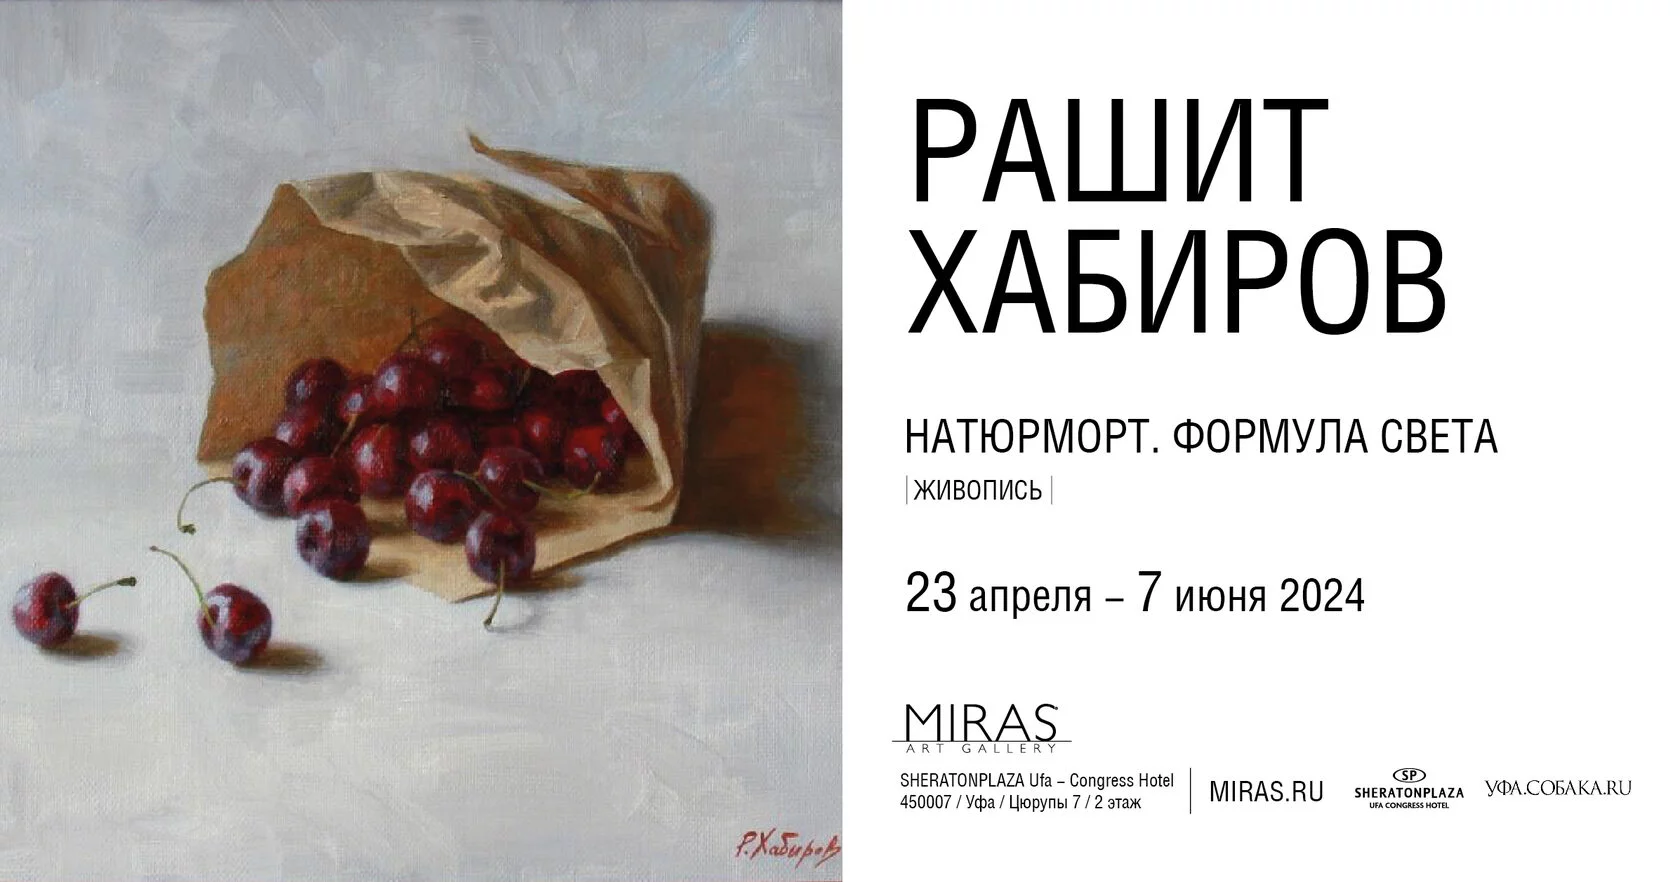 В галерее «Мирас» проходит выставка живописи Рашита Сабирова «Натюрморт. Формула света»